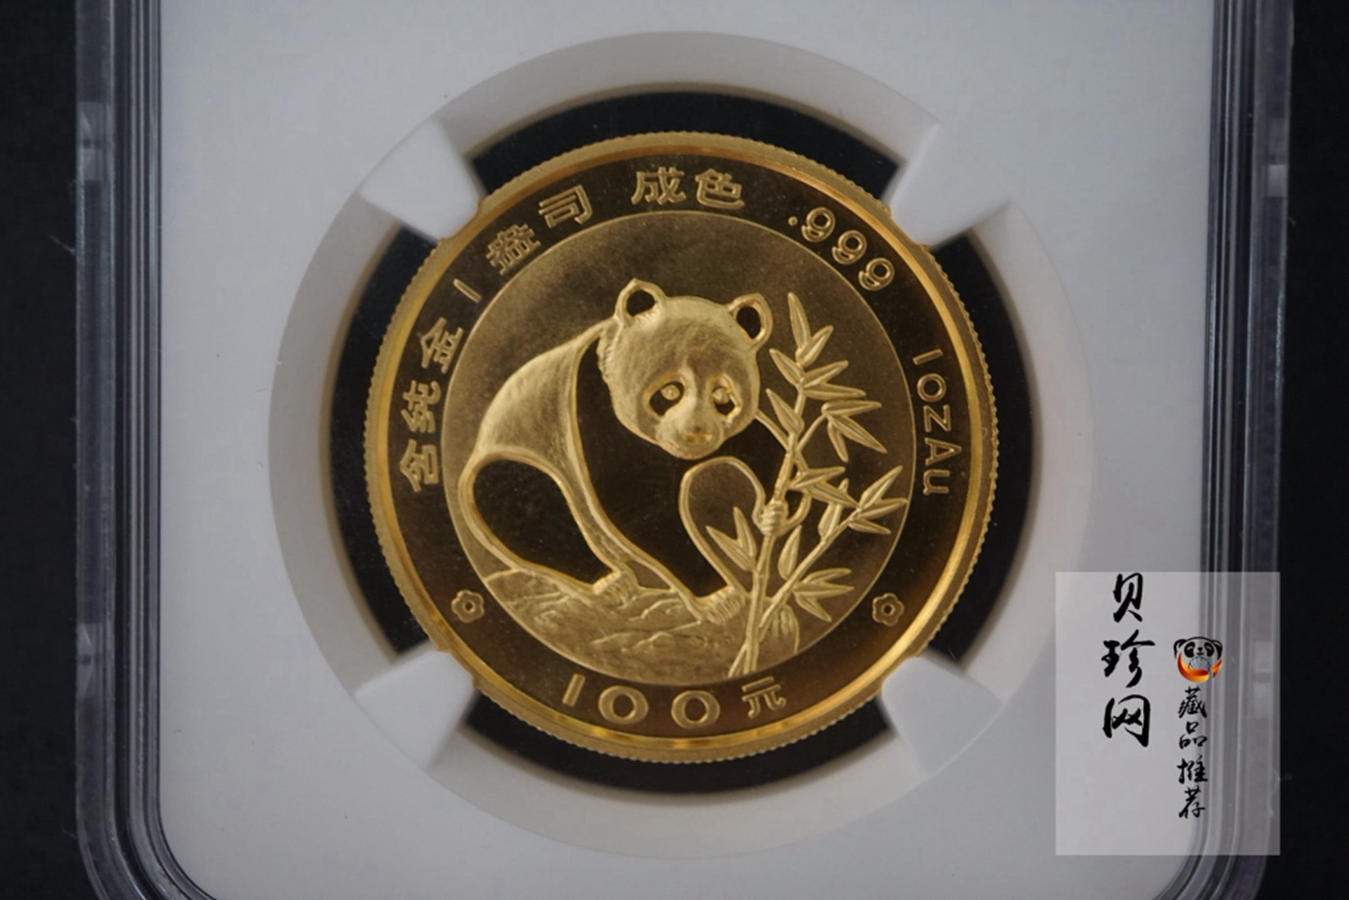 【889010】1988年熊猫普制金币五枚一套